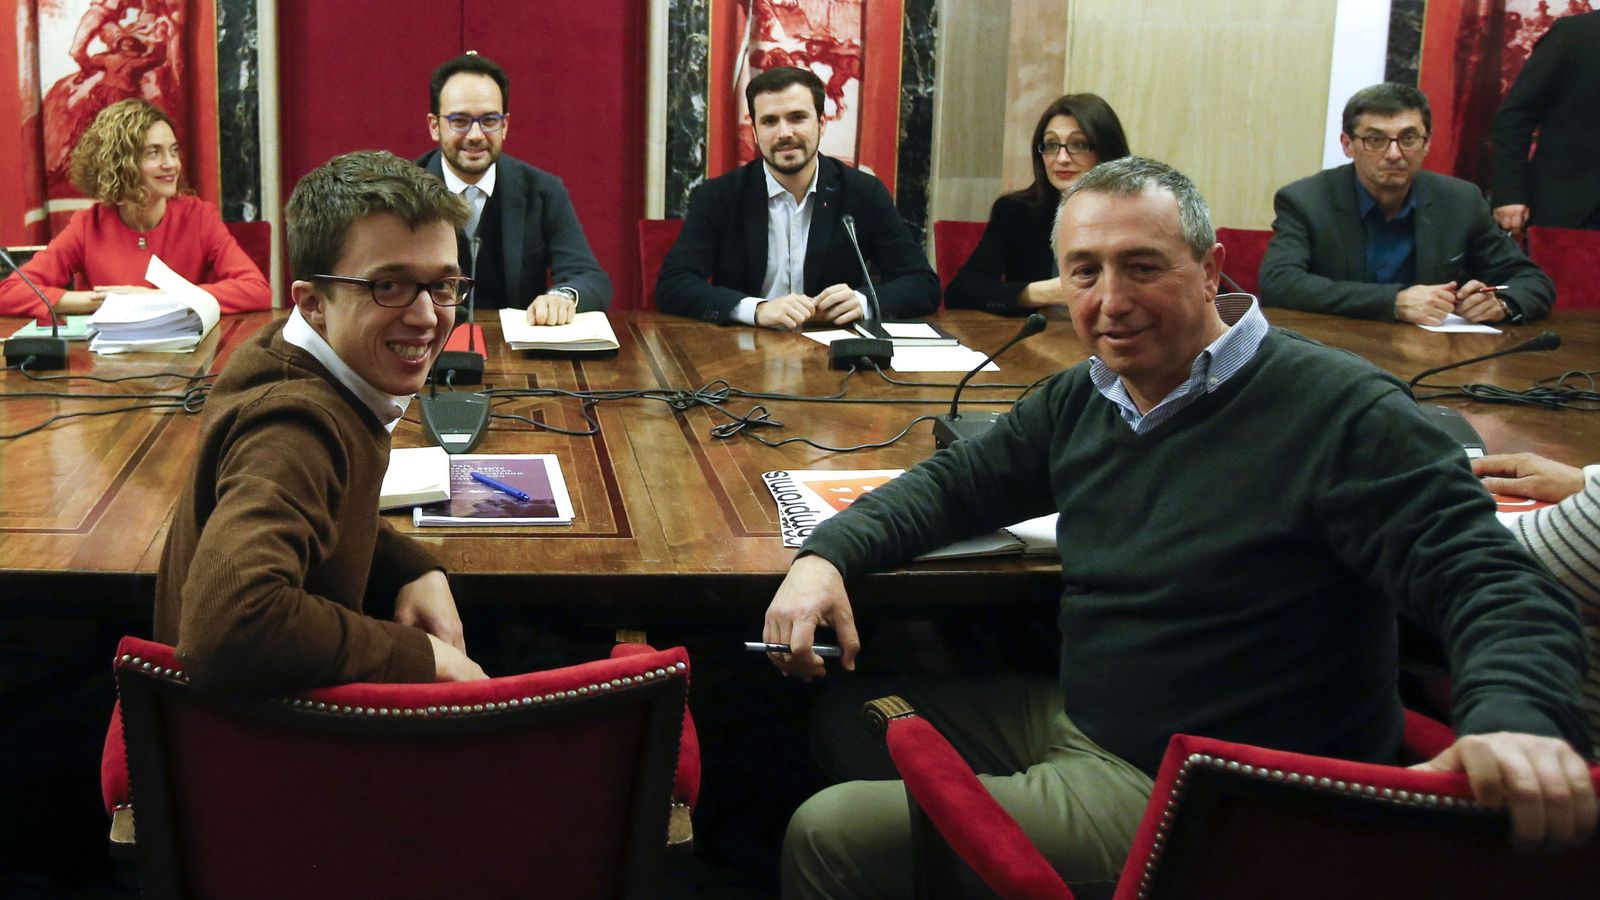 Foto: Íñigo Errejón, Joan Baldoví, Antonio Hernando y Alberto Garzón, este lunes 22 de febrero en la sala Sert del Congreso. (EFE)